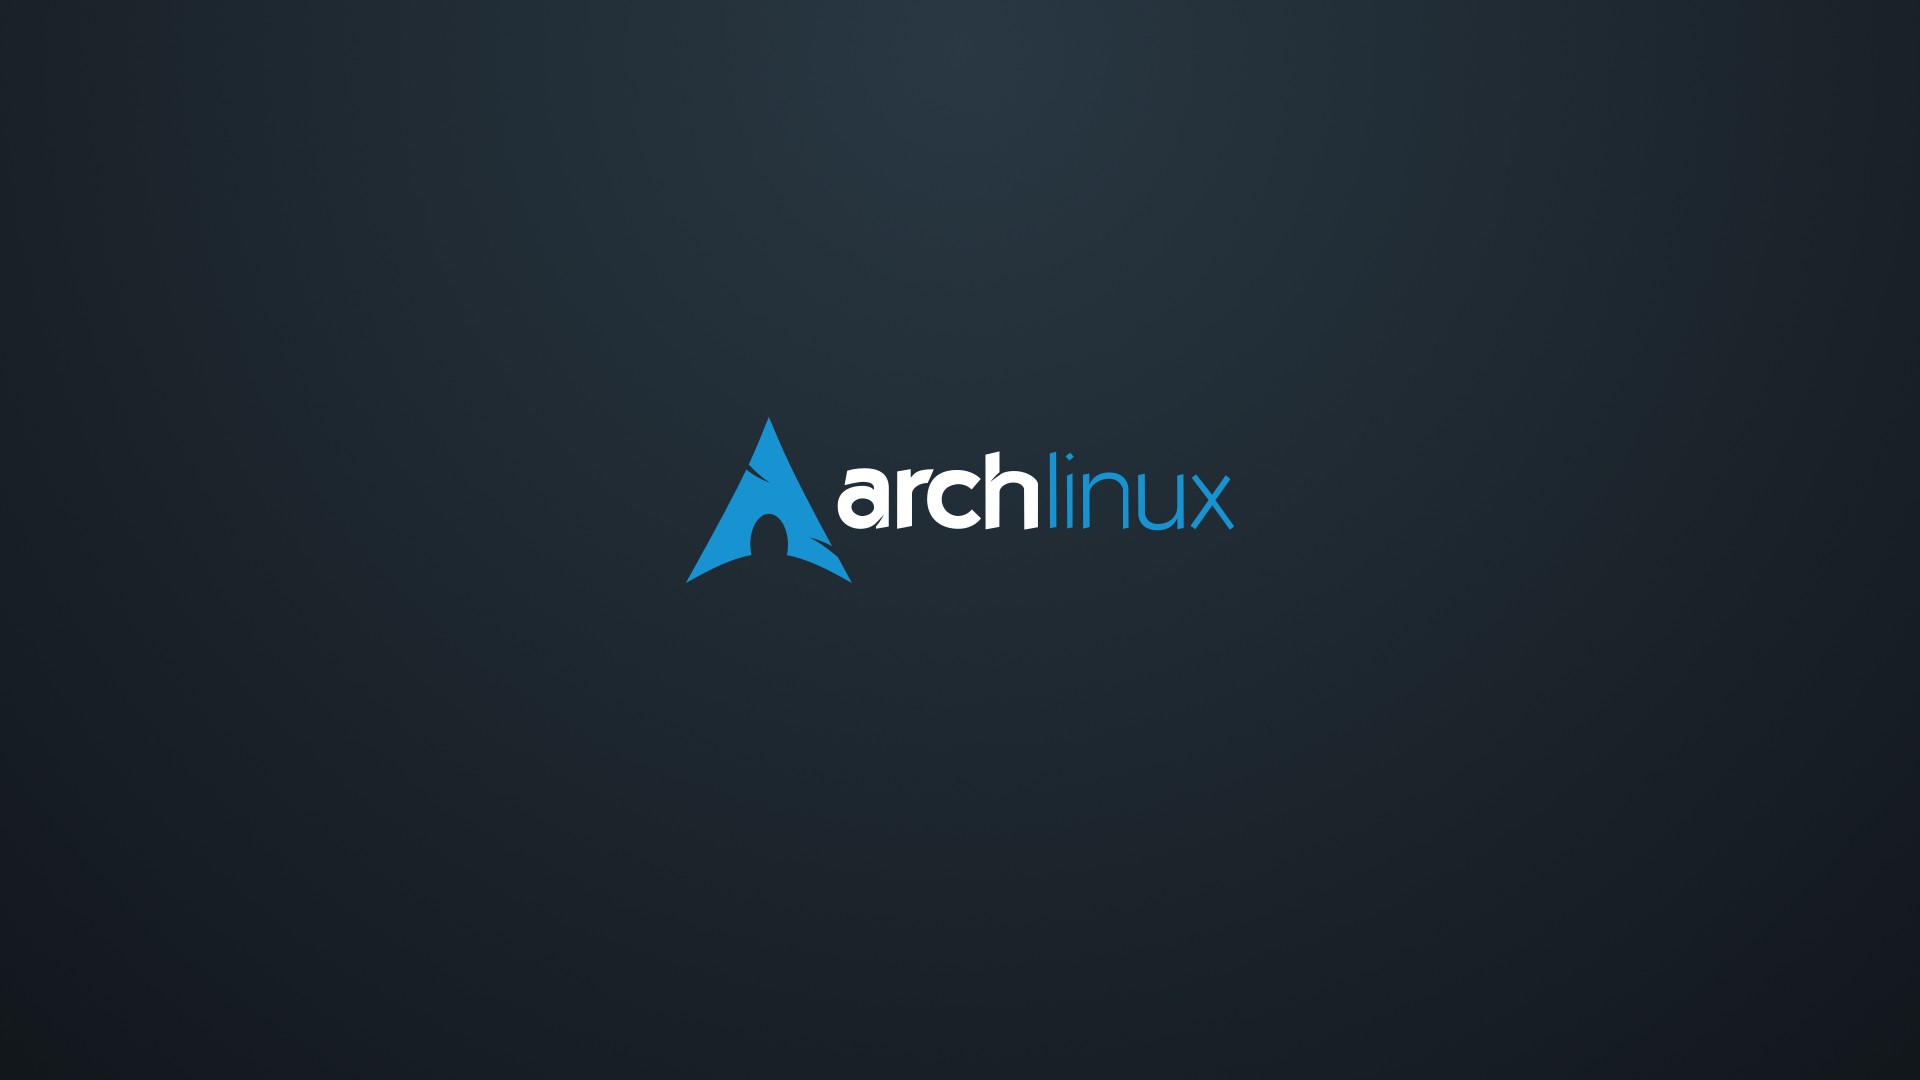 桌面上的壁纸Arch Linux Archlinux 利纳克斯